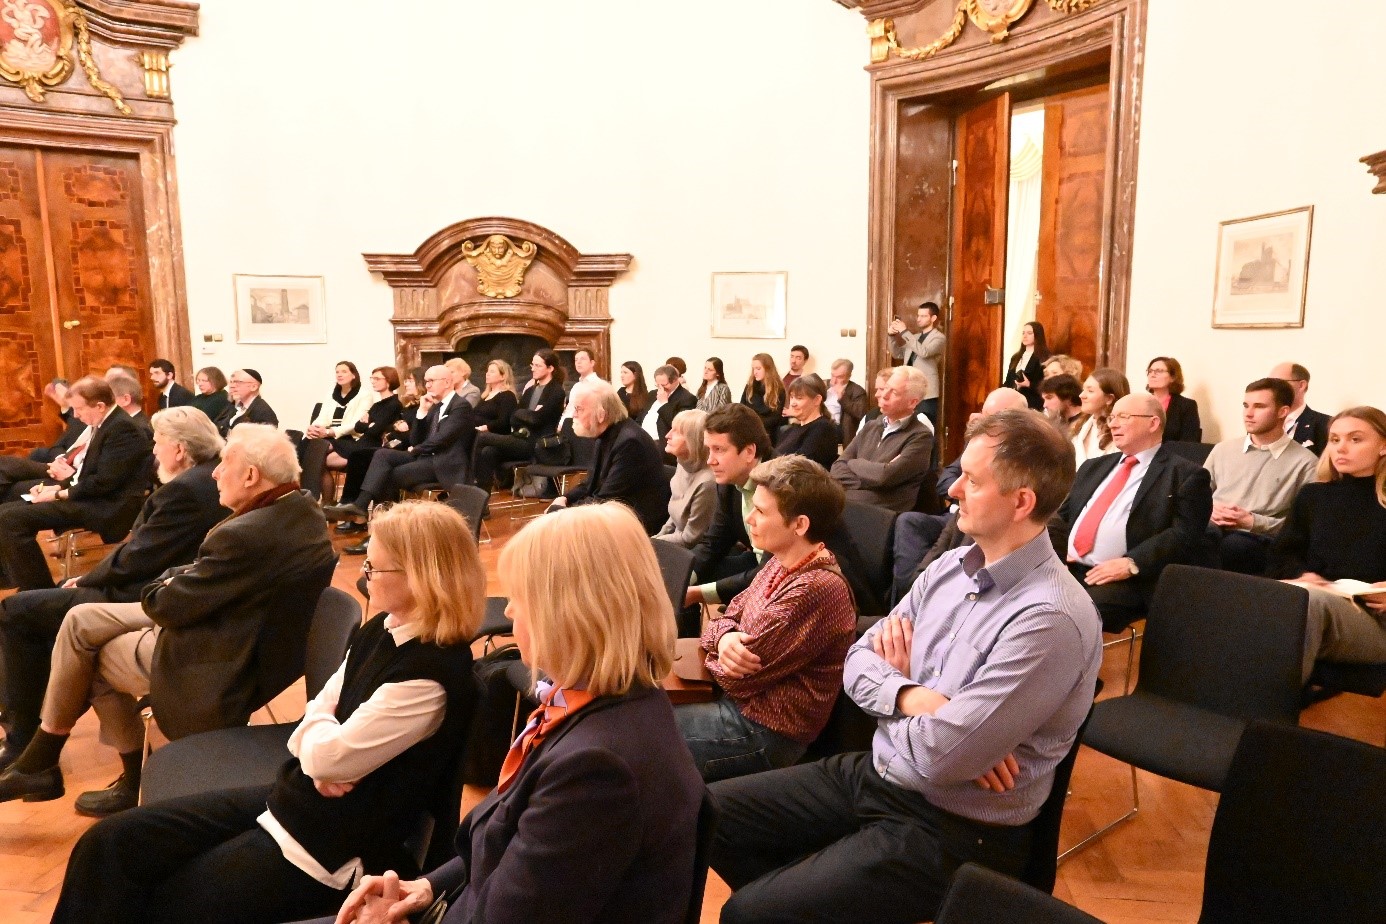 Die Besucher der Lesung im Kuppelsaal des Palais Lobkowitz. Credit: Kseniia Pulgarina